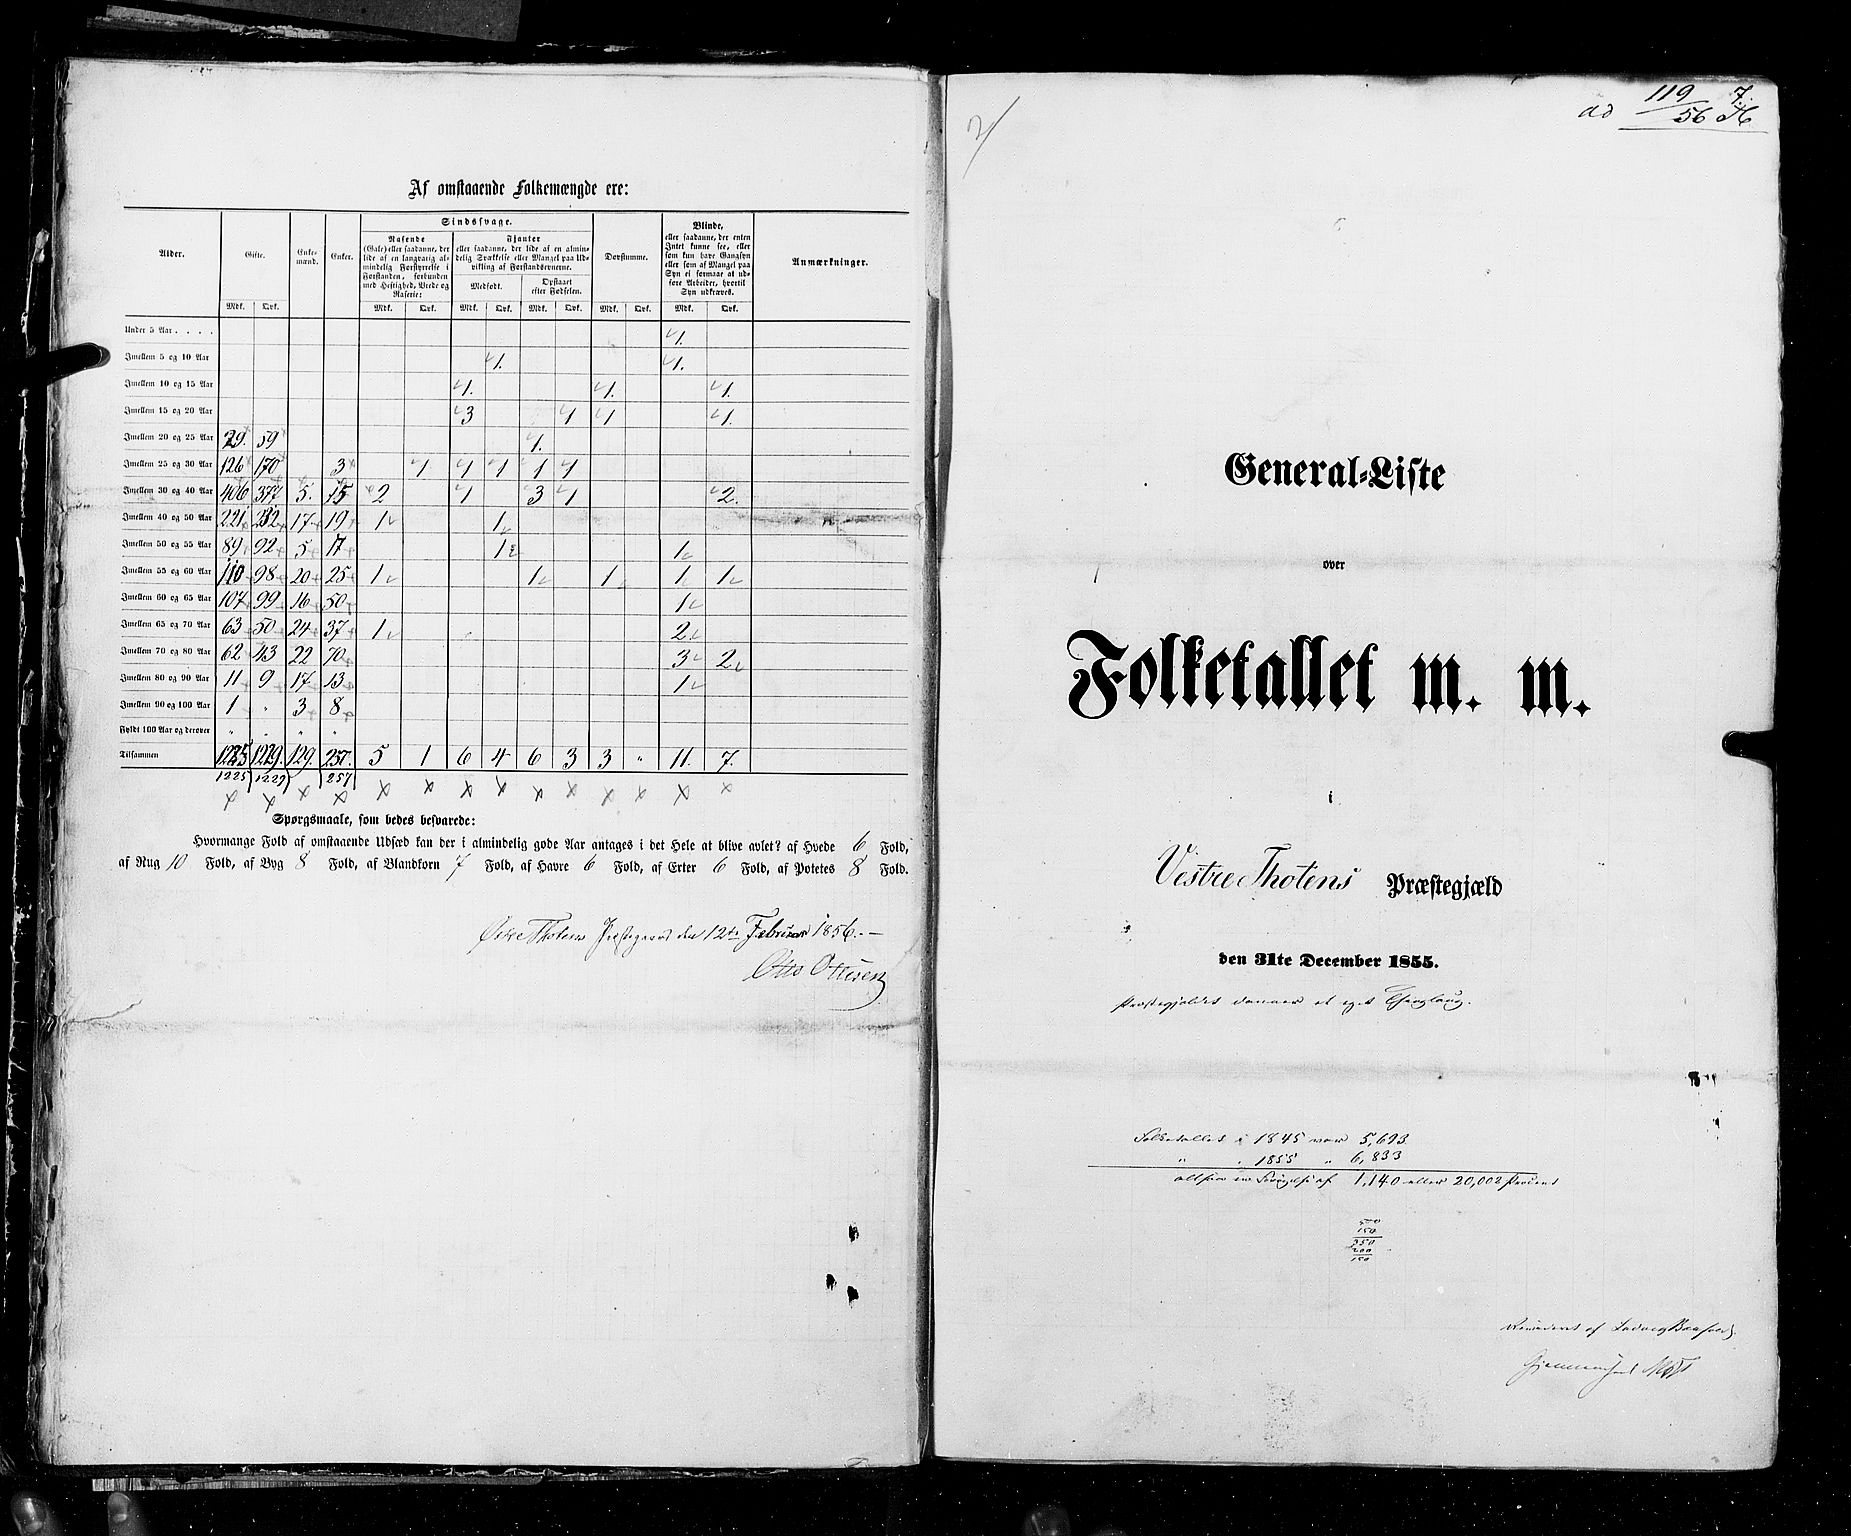 RA, Census 1855, vol. 2: Kristians amt, Buskerud amt og Jarlsberg og Larvik amt, 1855, p. 7